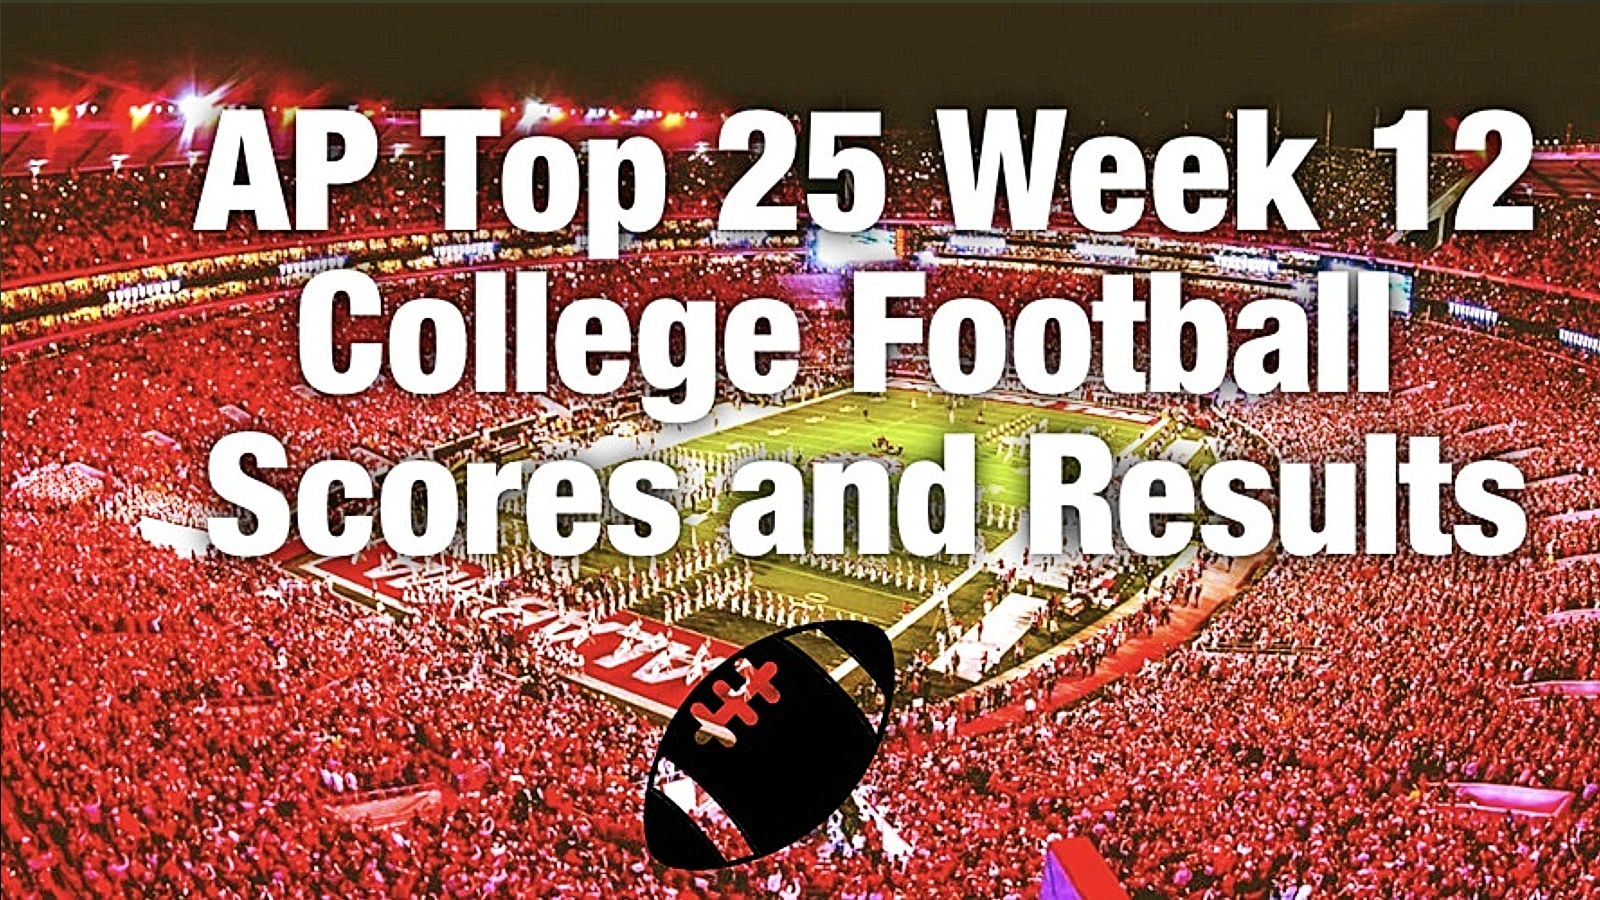 Week 12 AP Top 25 football scores, winners and losers – Nov. 20